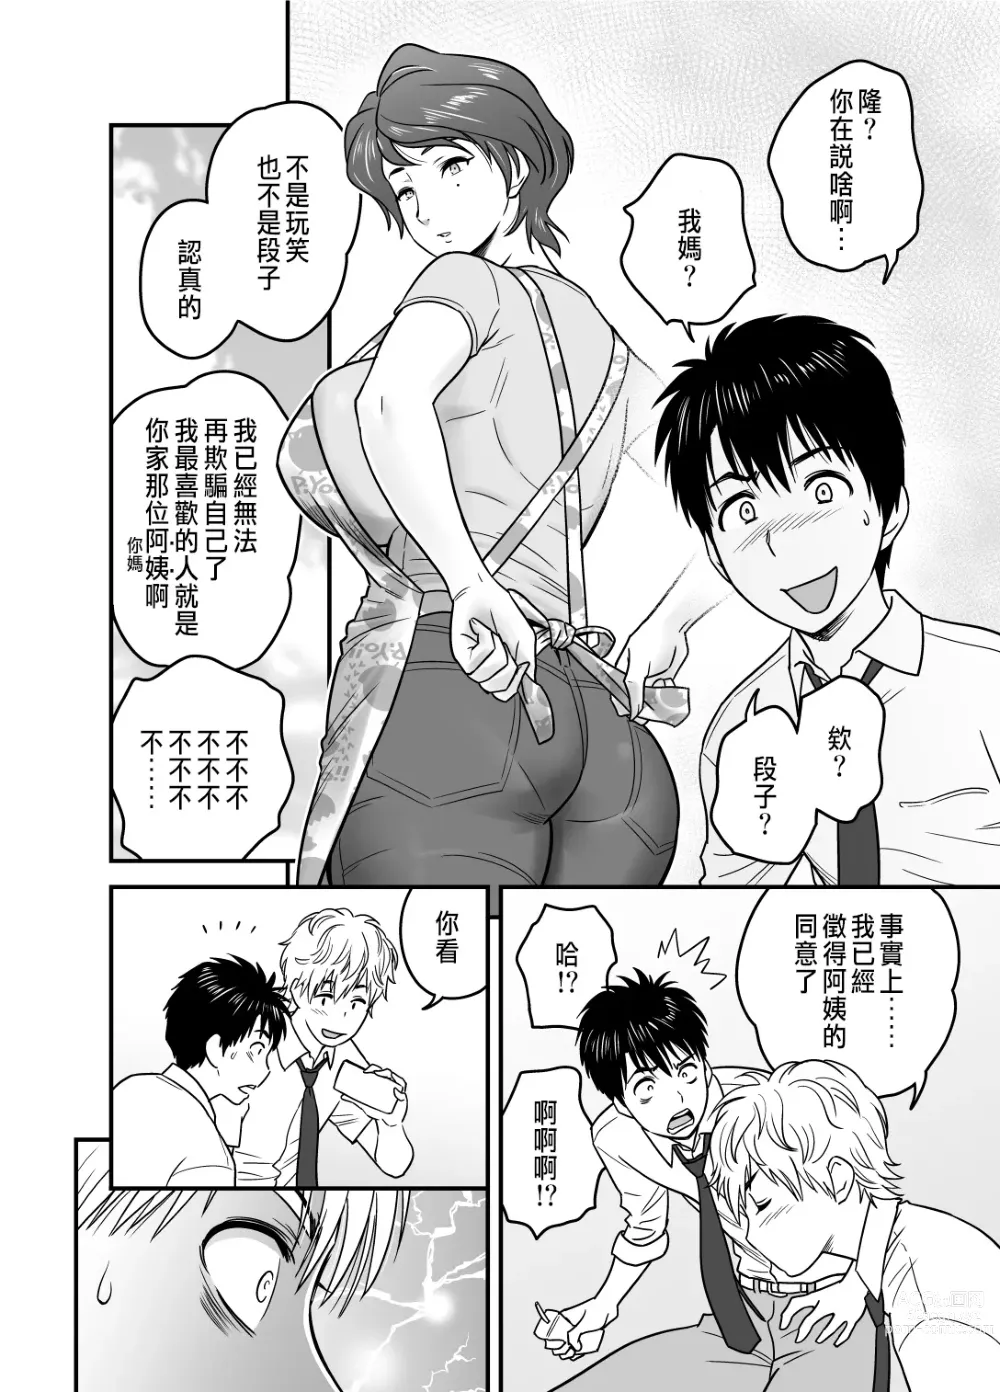 Page 4 of manga 母が友カノになったので